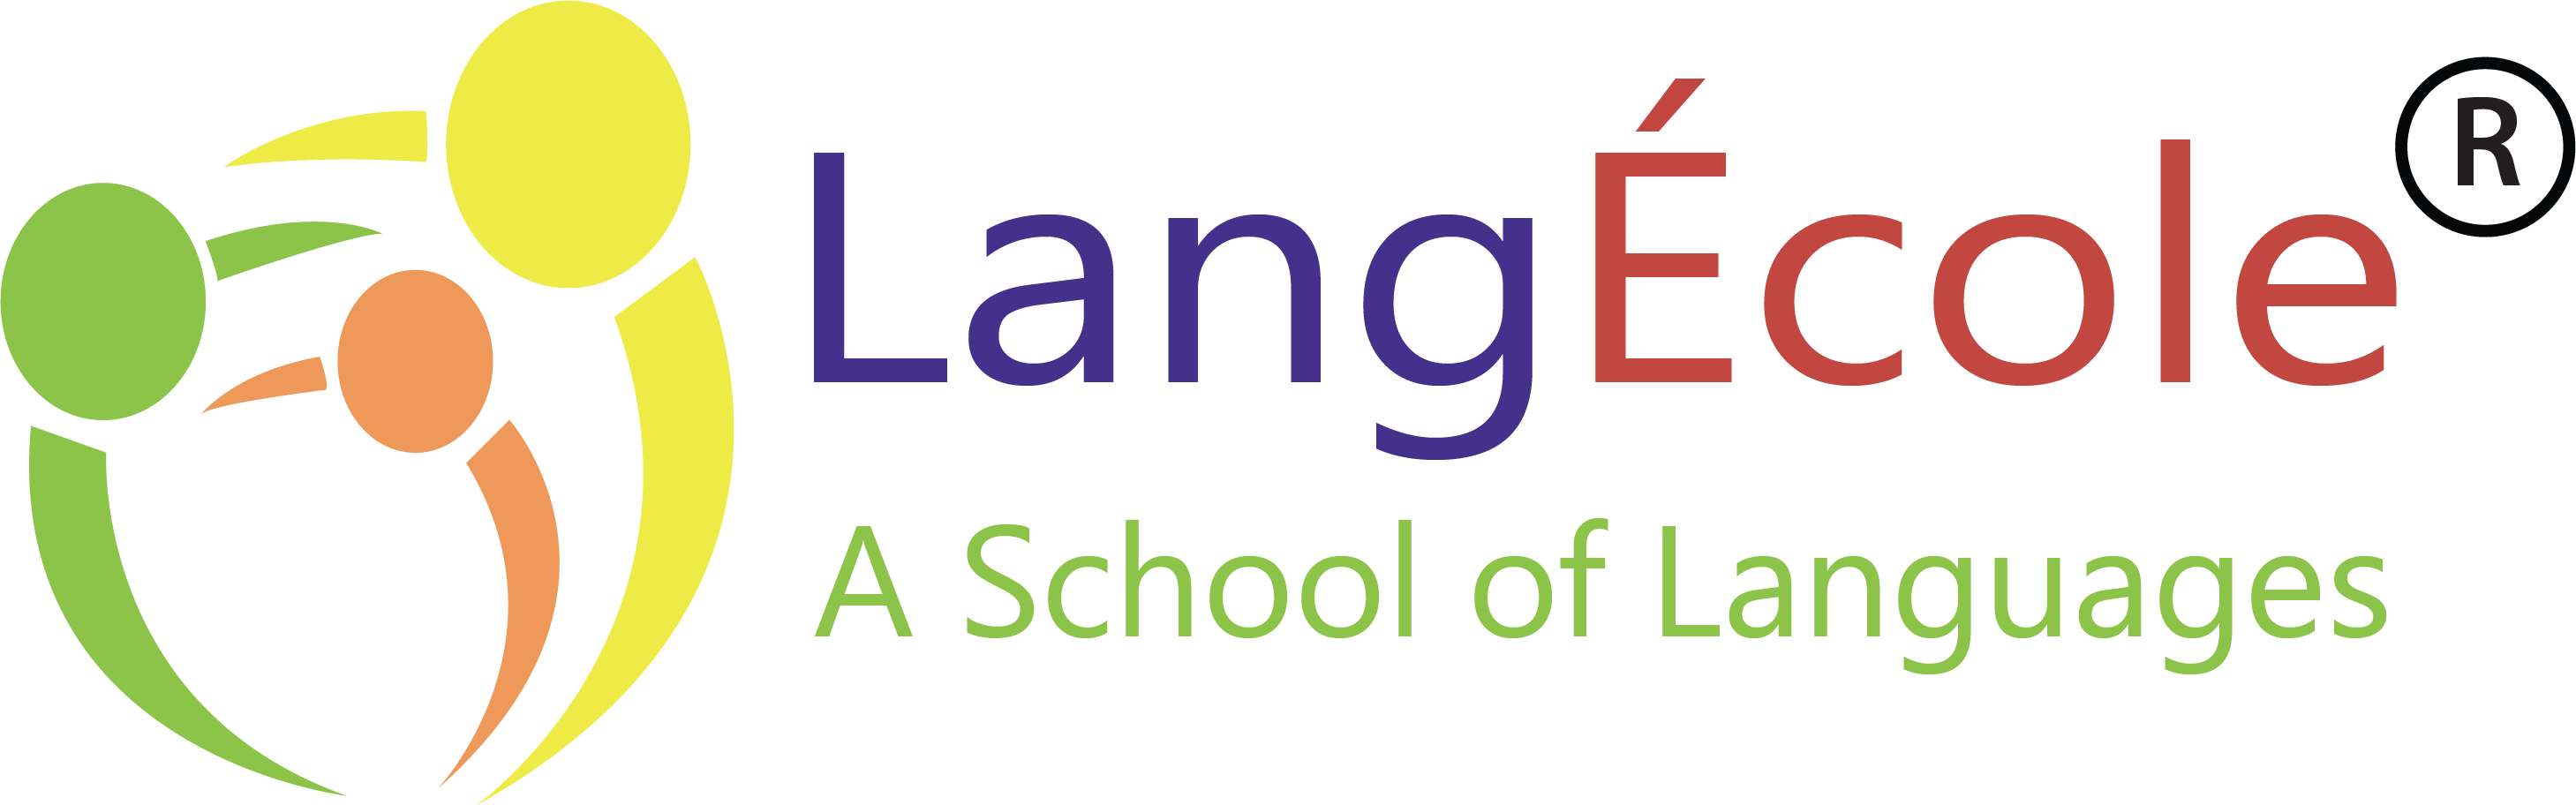 LangÉcole - A School of Languages Logo